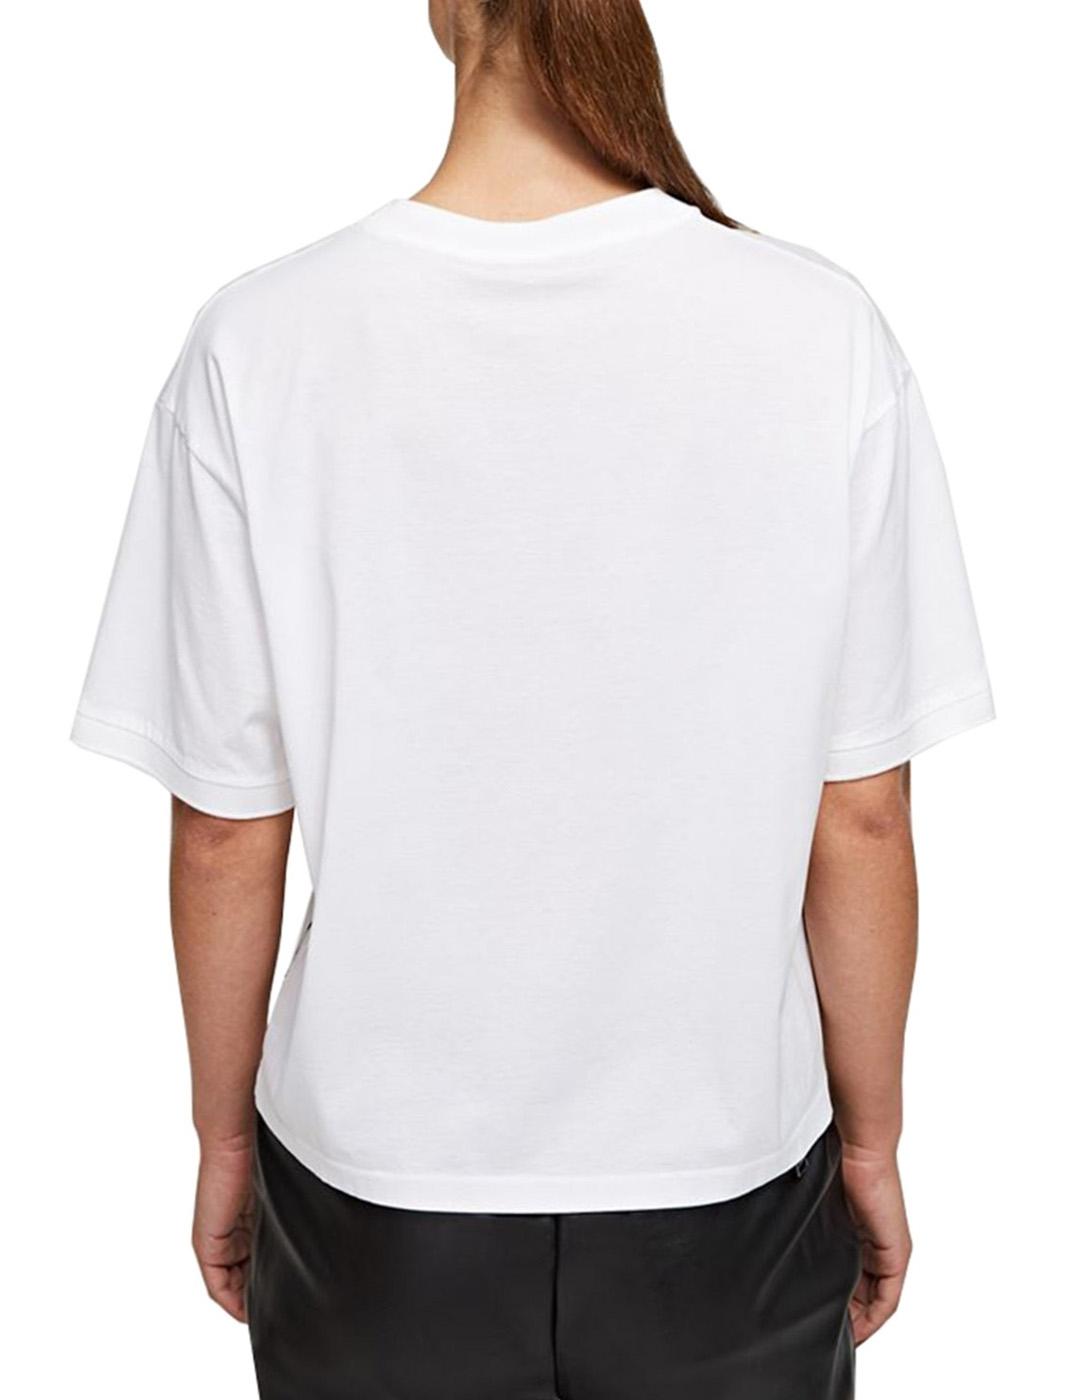 Camiseta Karl Lagerfeld blanca Mercerized Rue St Guillaume